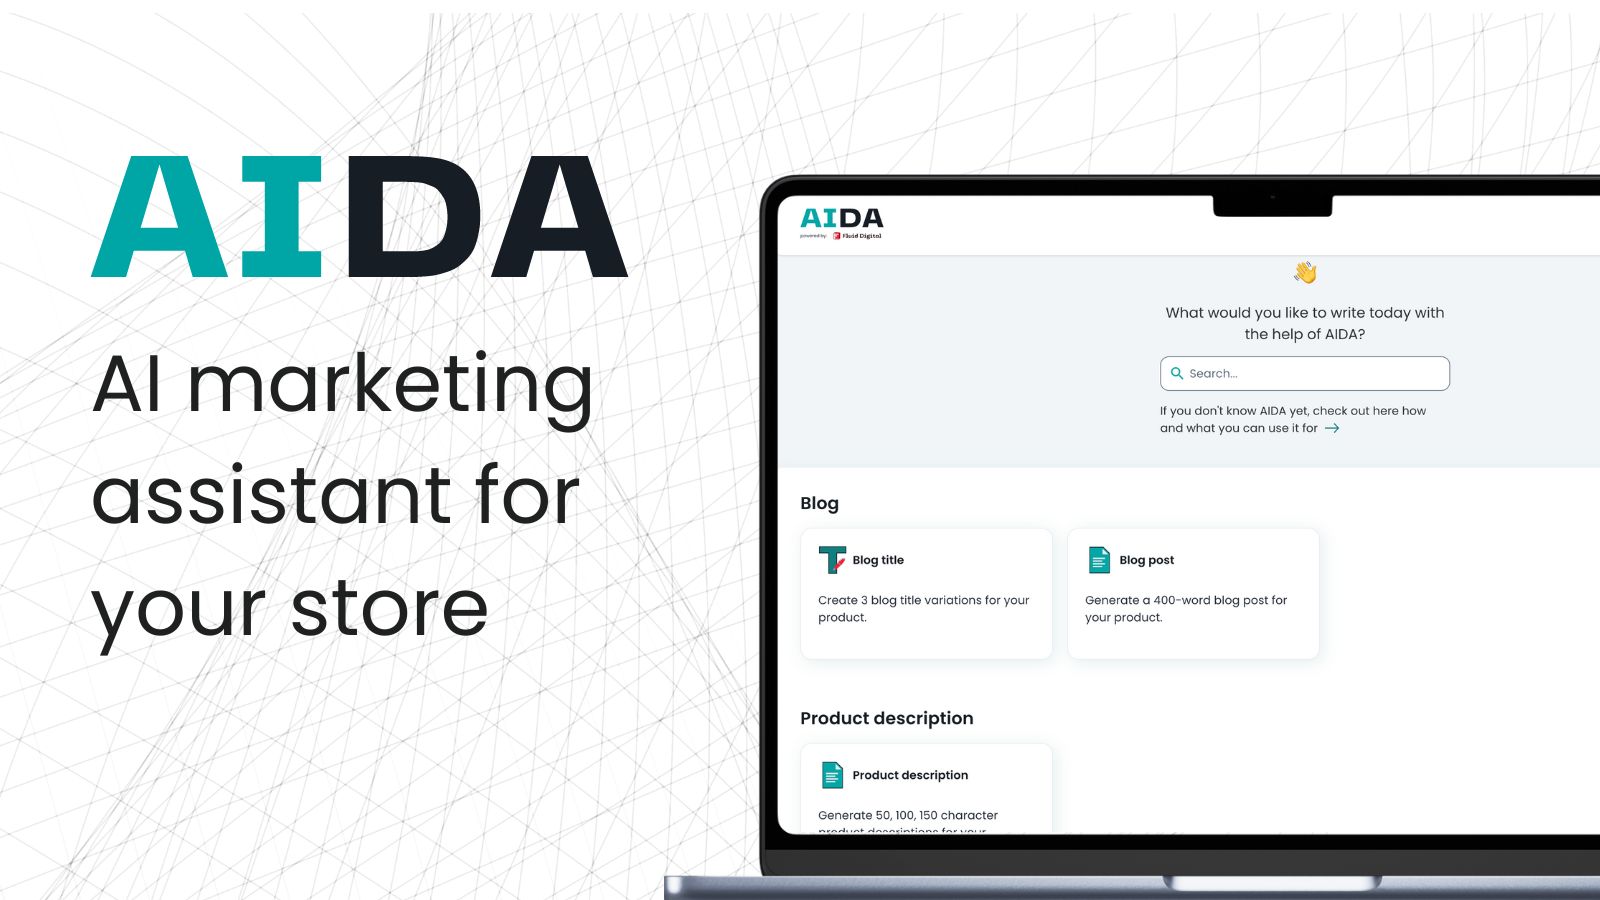 AIDA, asistente de marketing AI para tu tienda en línea